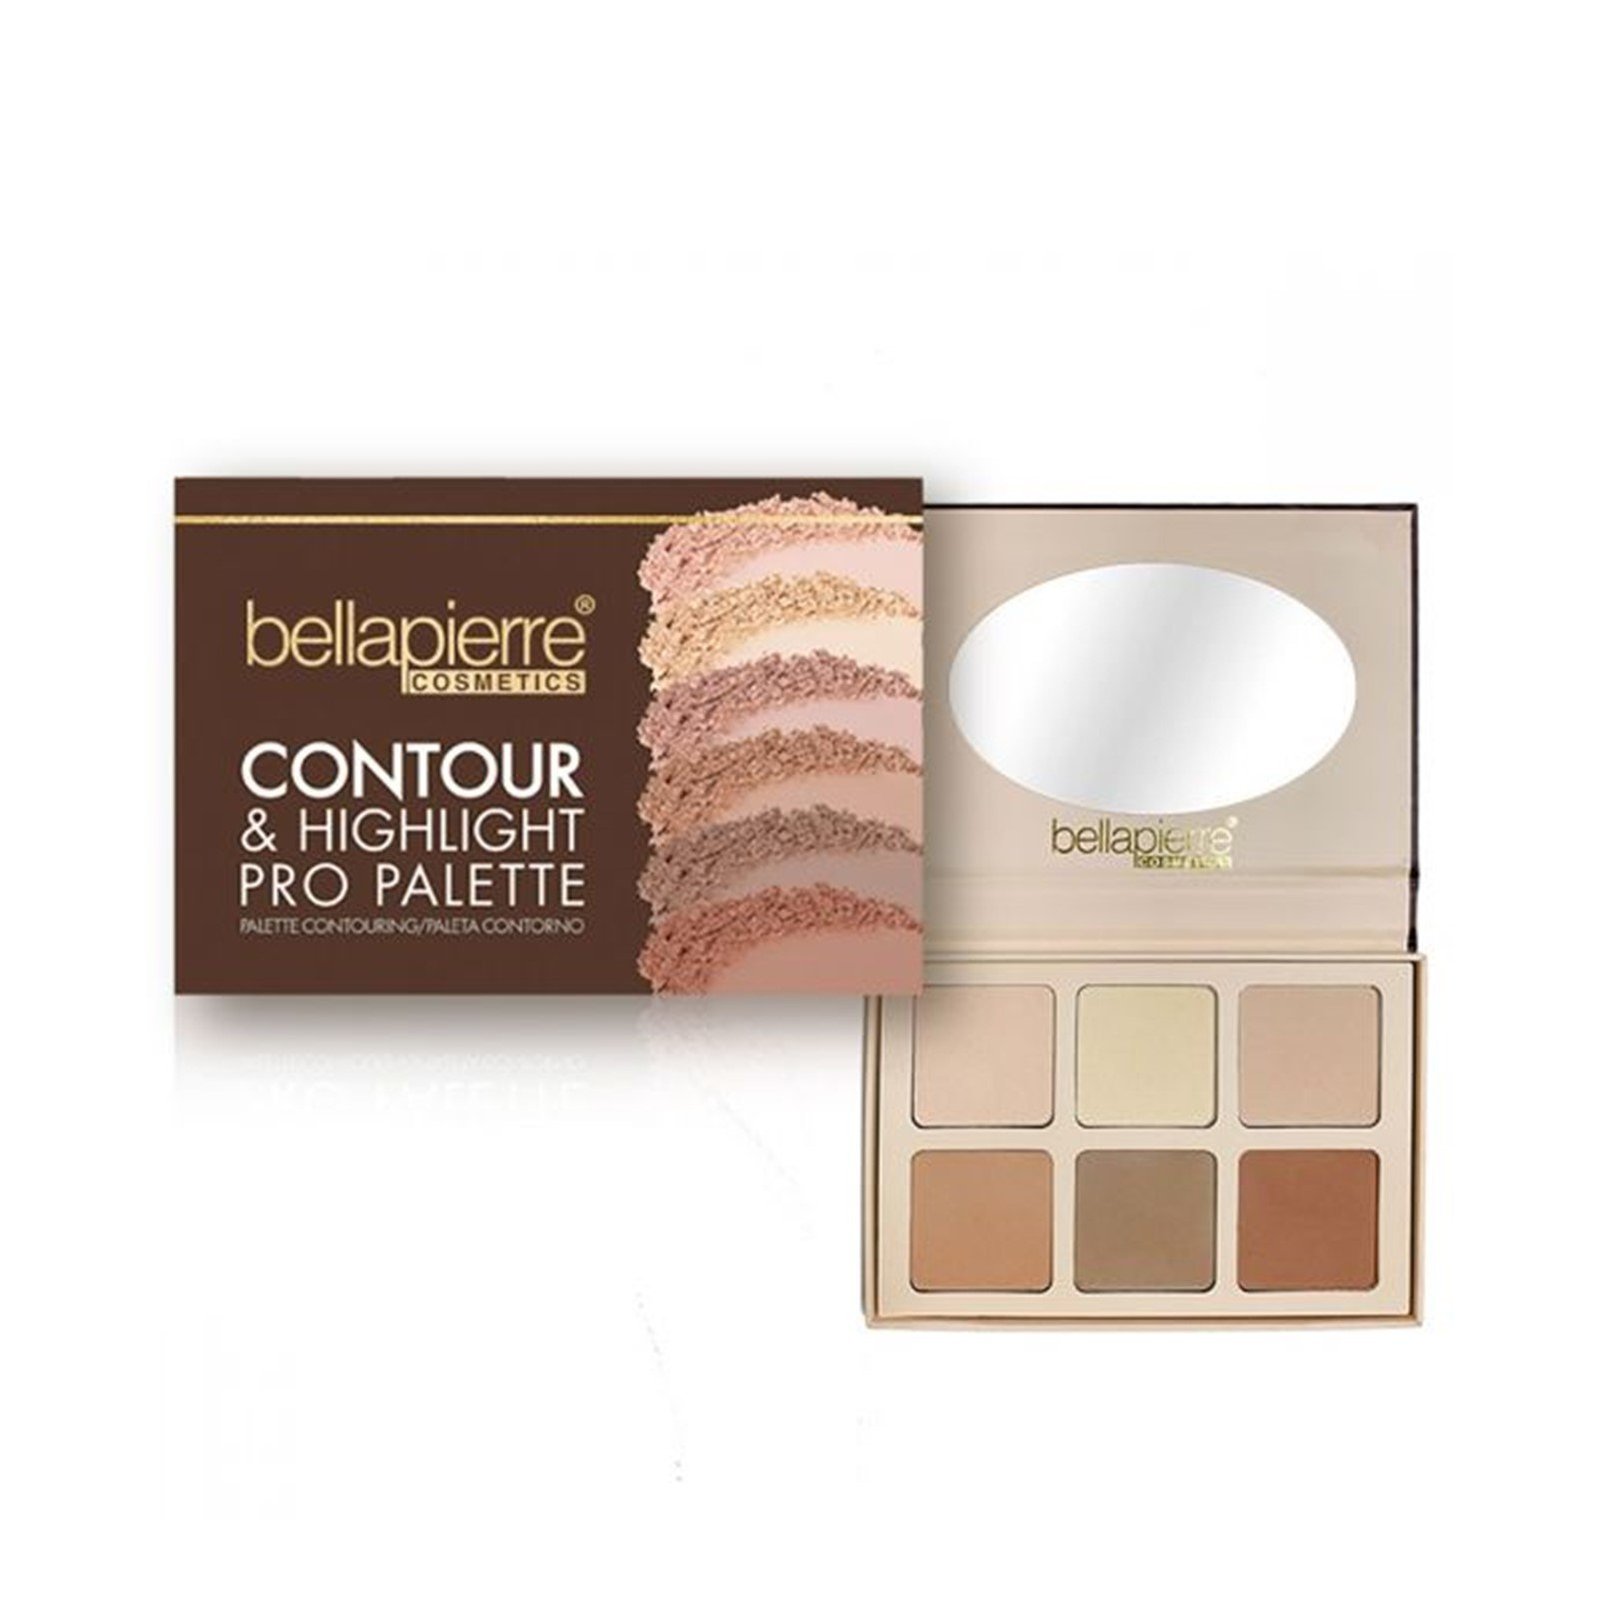 Bellapierre Cosmetics Contour & Highlight Pro Palette